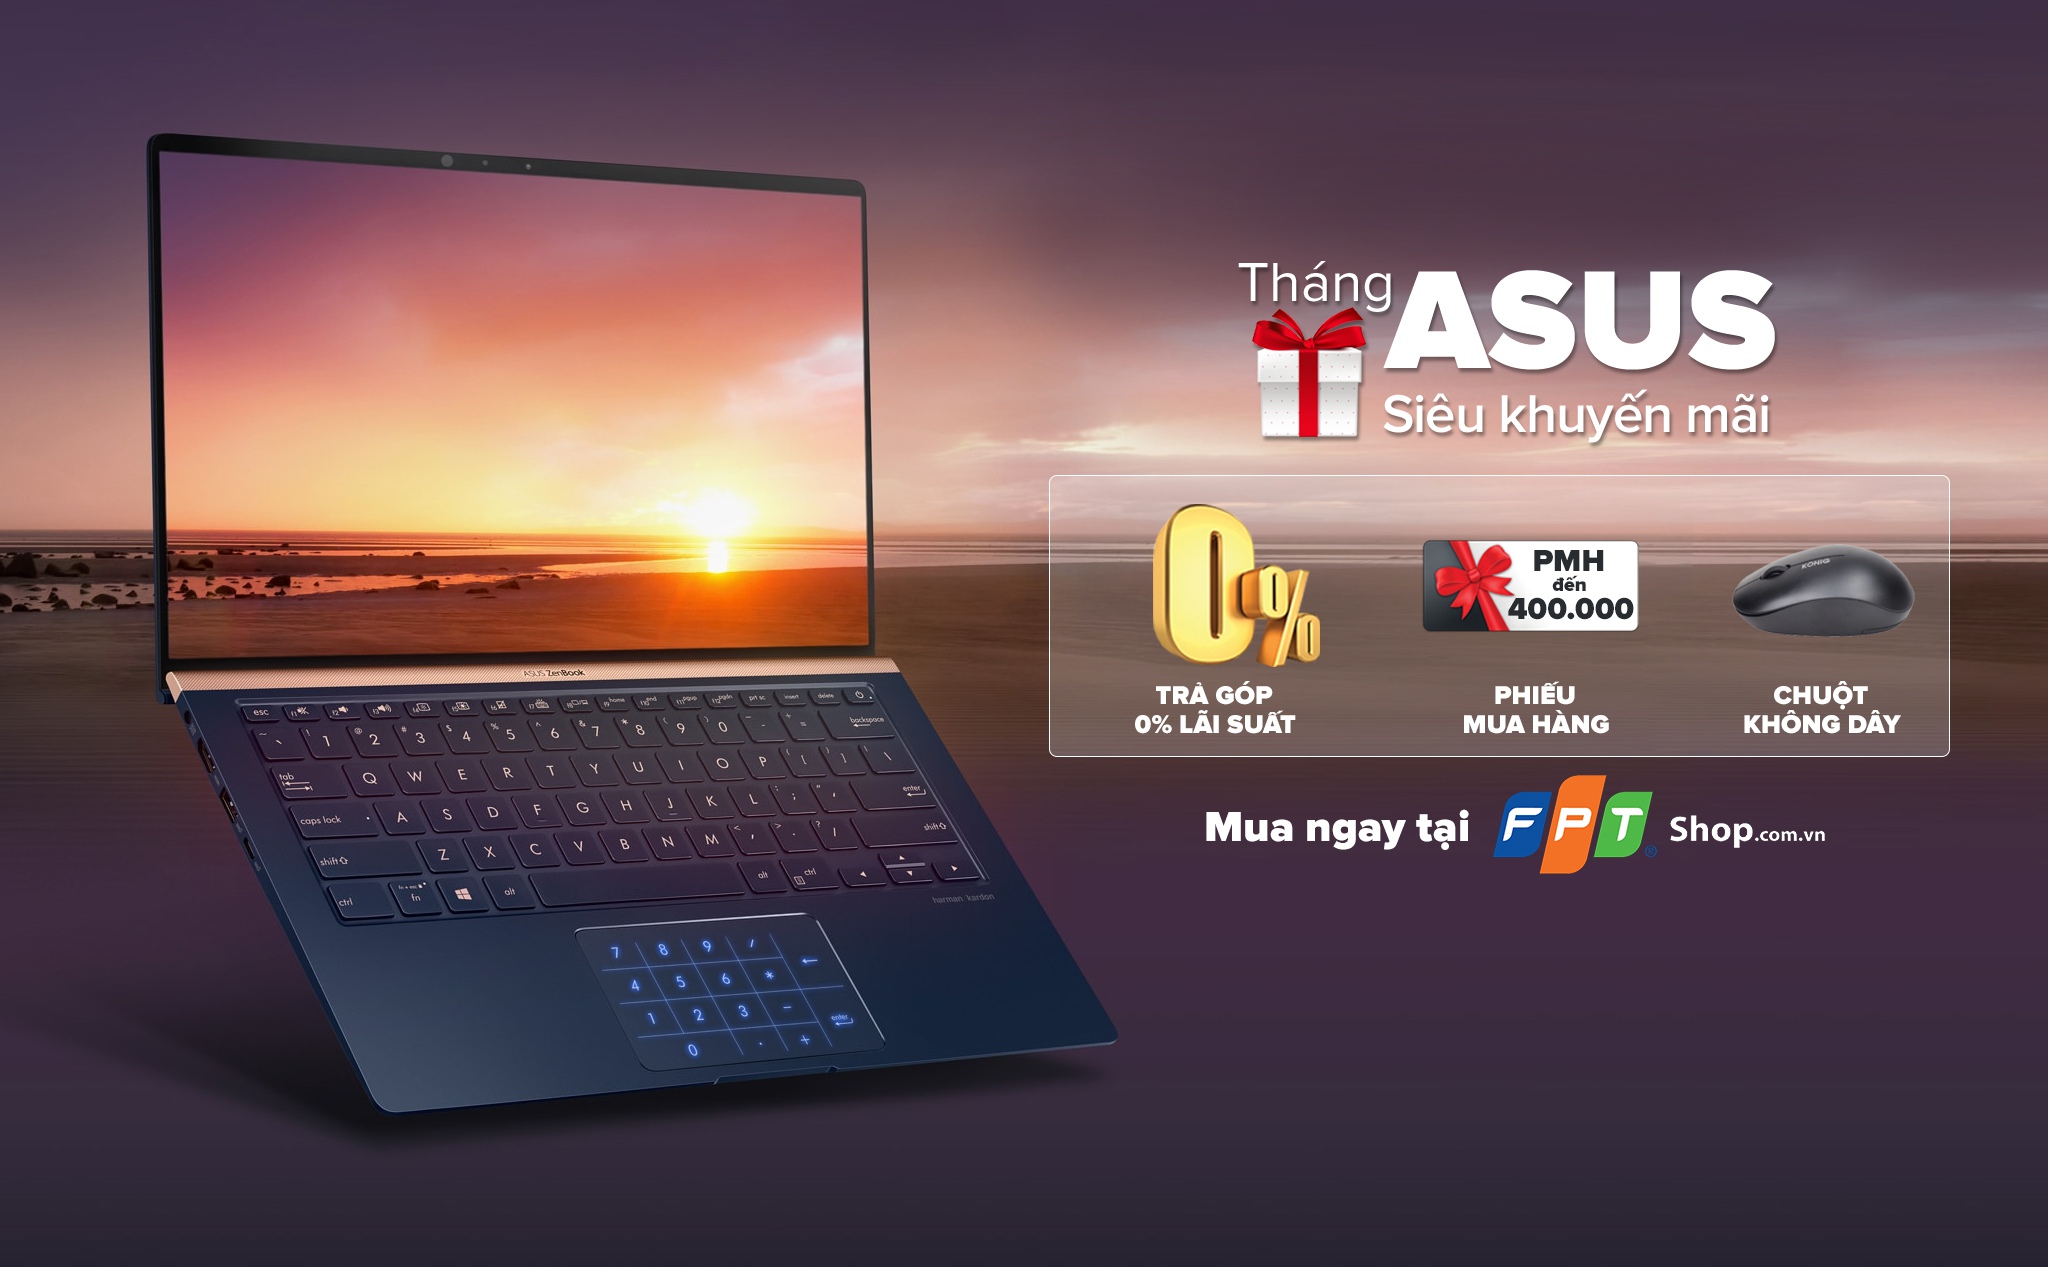 [QC] Nhận bộ quà khủng đến 2 triệu đồng khi mua laptop Asus tại FPT Shop